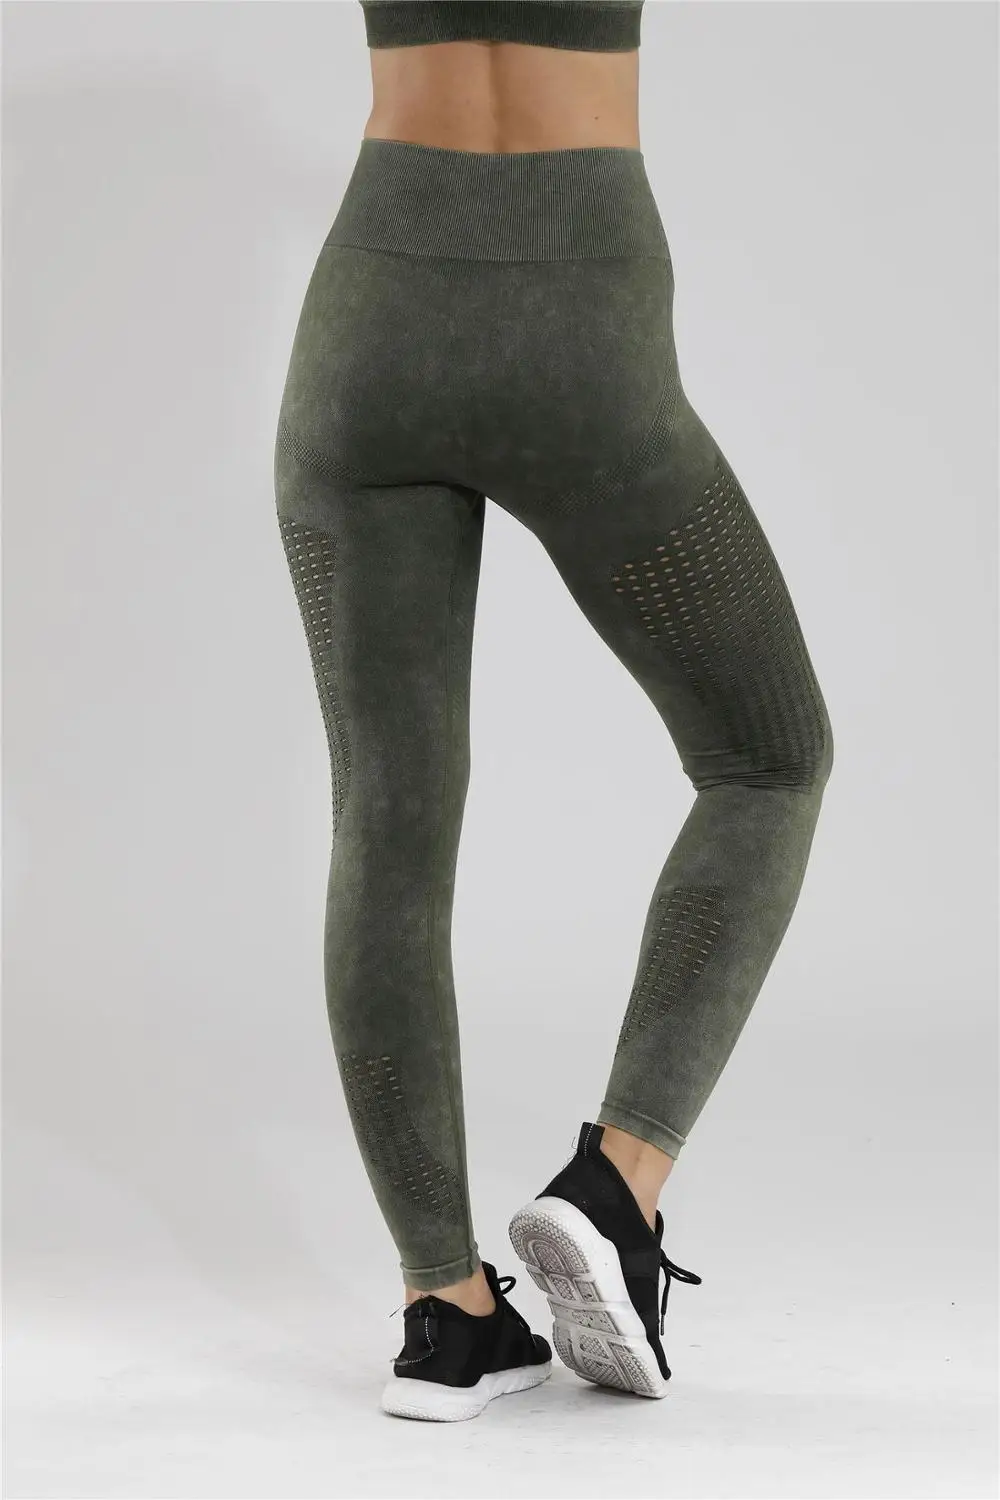 Женские Бесшовные легинсы, одежда для фитнеса, плотные штаны для йоги, непромокаемые спортивные брюки, брюки для фитнеса, штаны для бега, тонкие леггинсы для фитнеса - Цвет: Frosted green pant